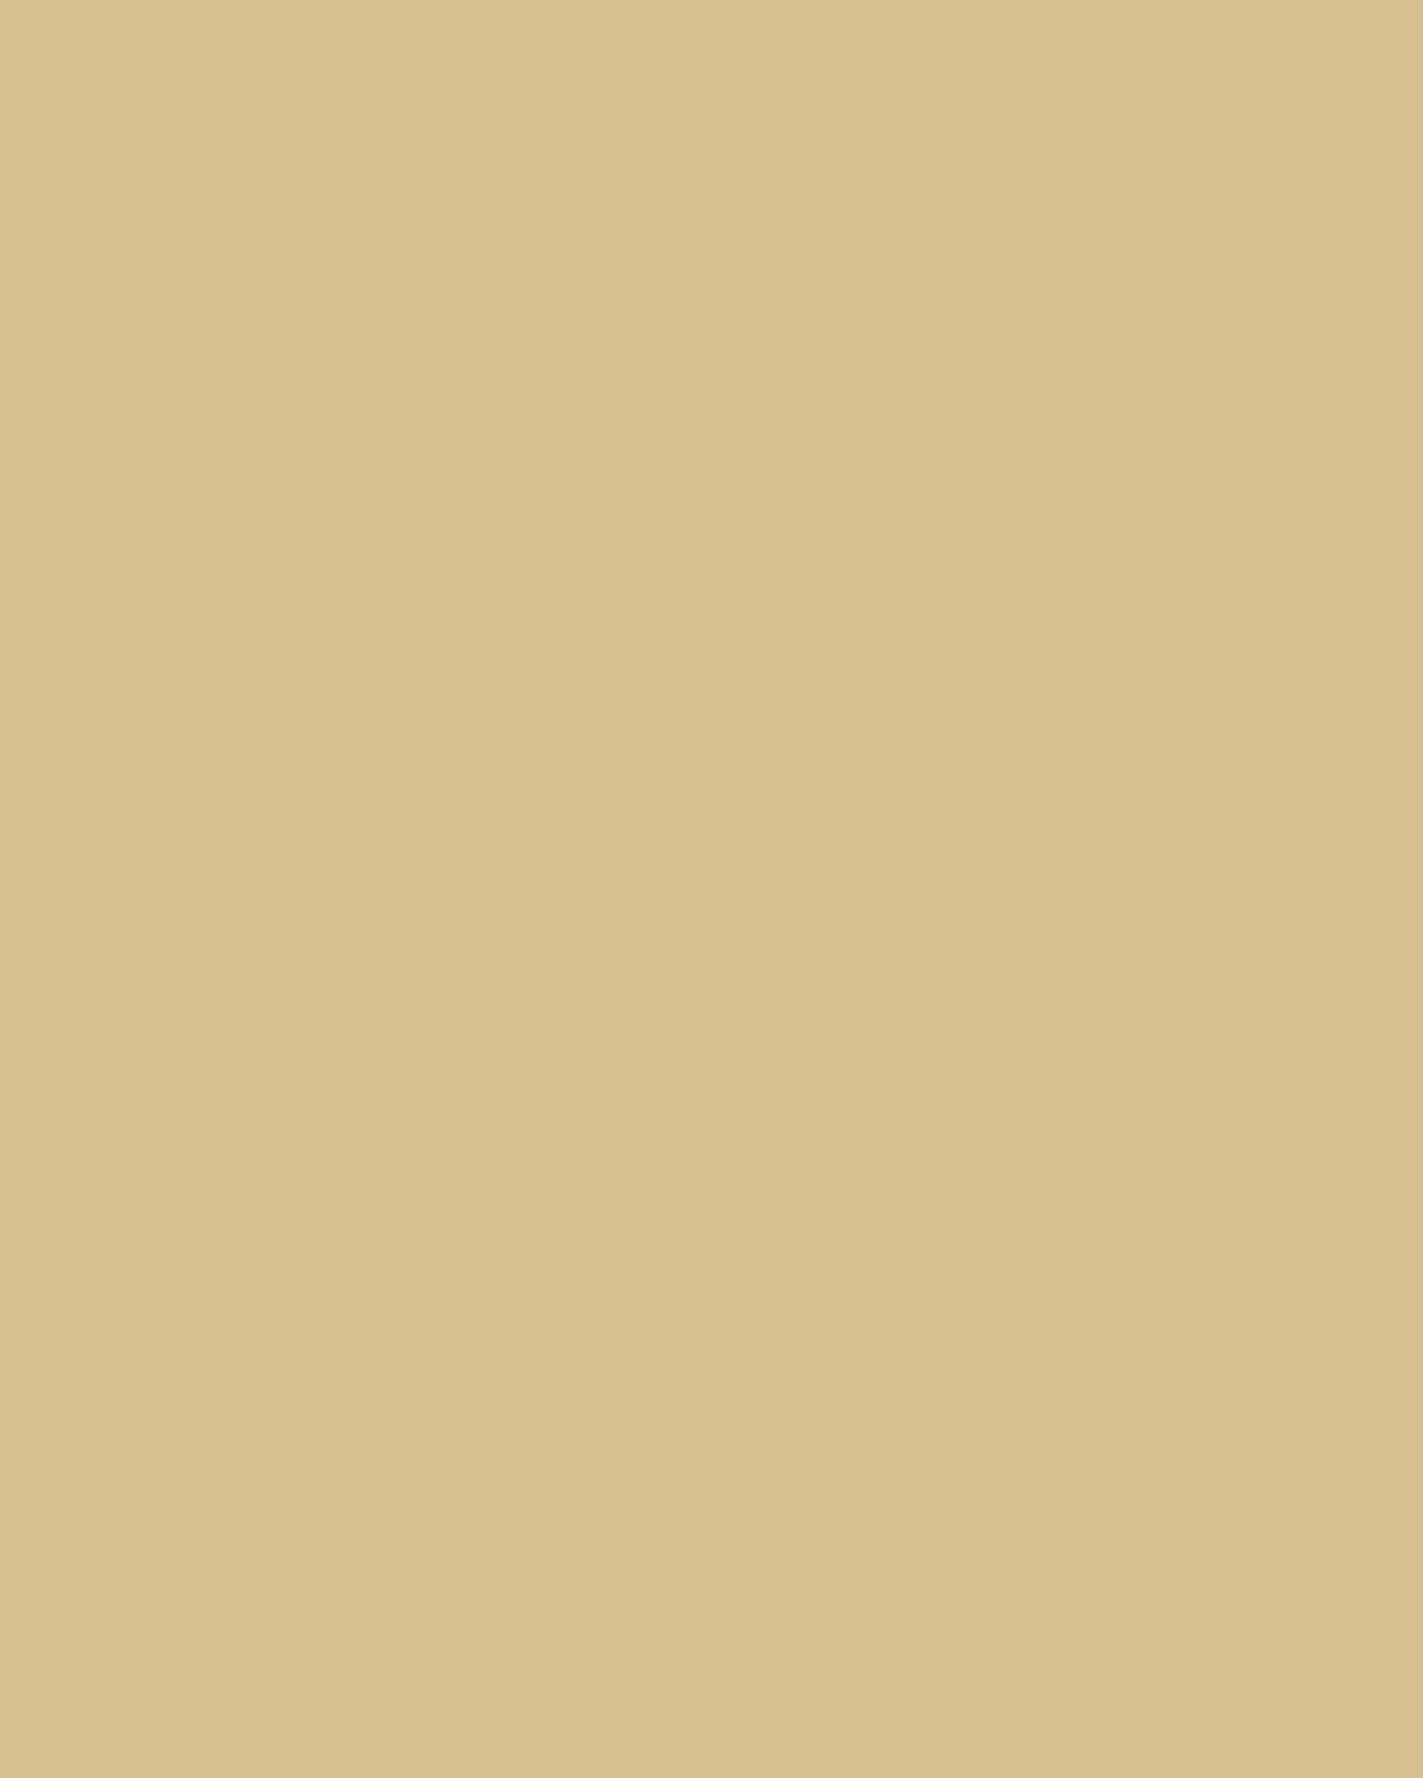 Тарас Шевченко. Портрет девочки с собакой. 1838. Национальный музей Тараса Шевченко, Киев, Украина